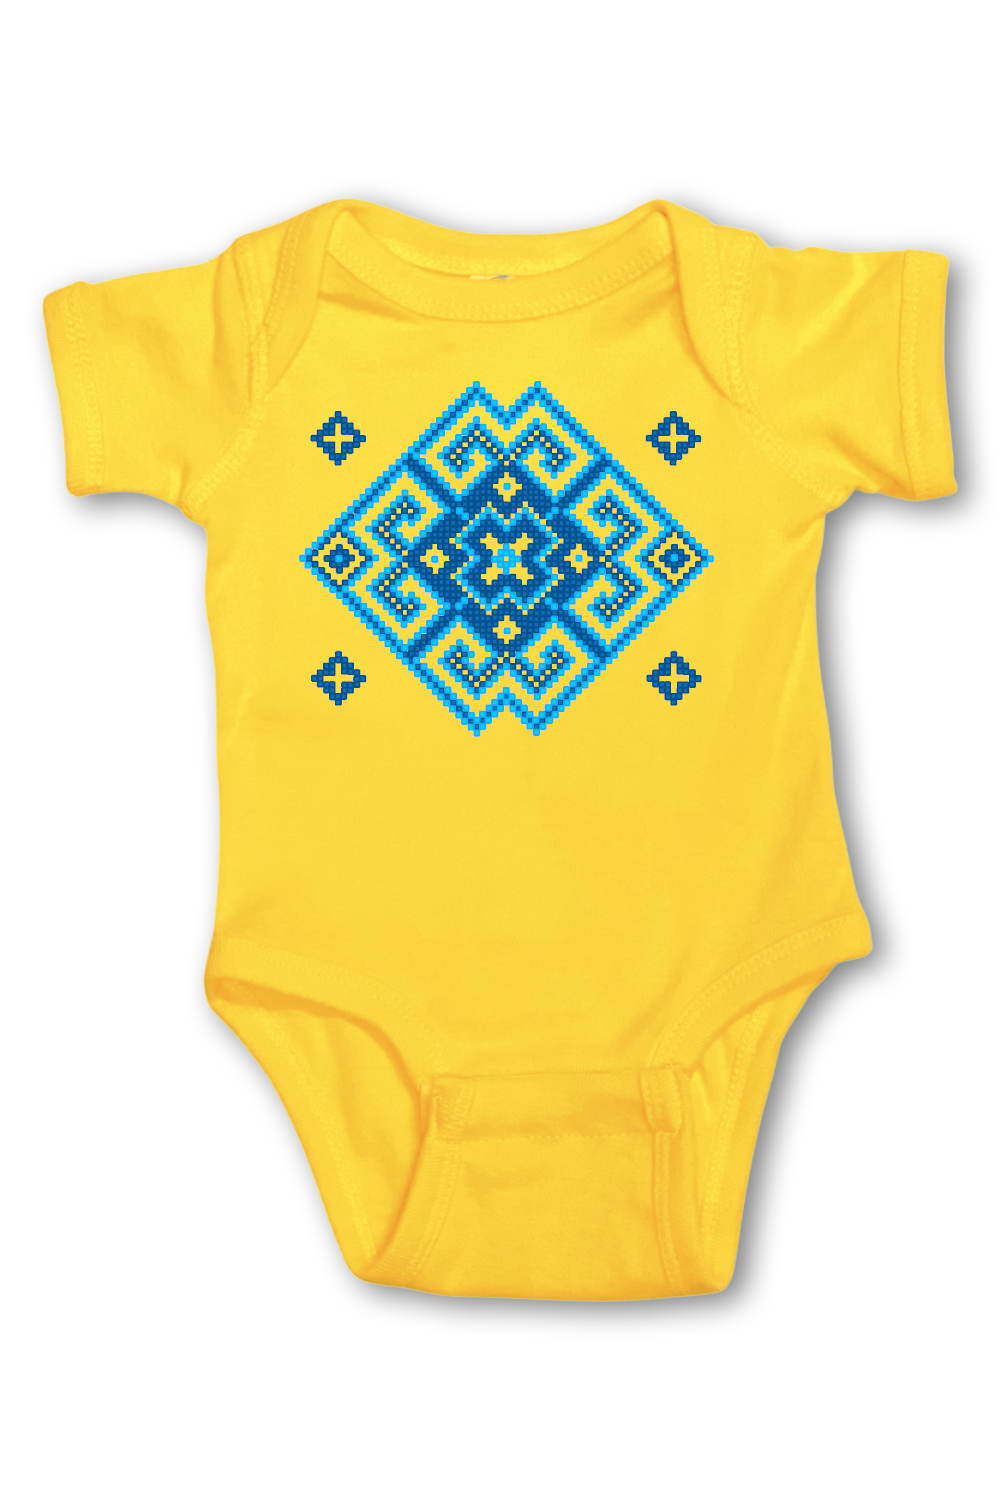 Infant onesie "Vortex" blue